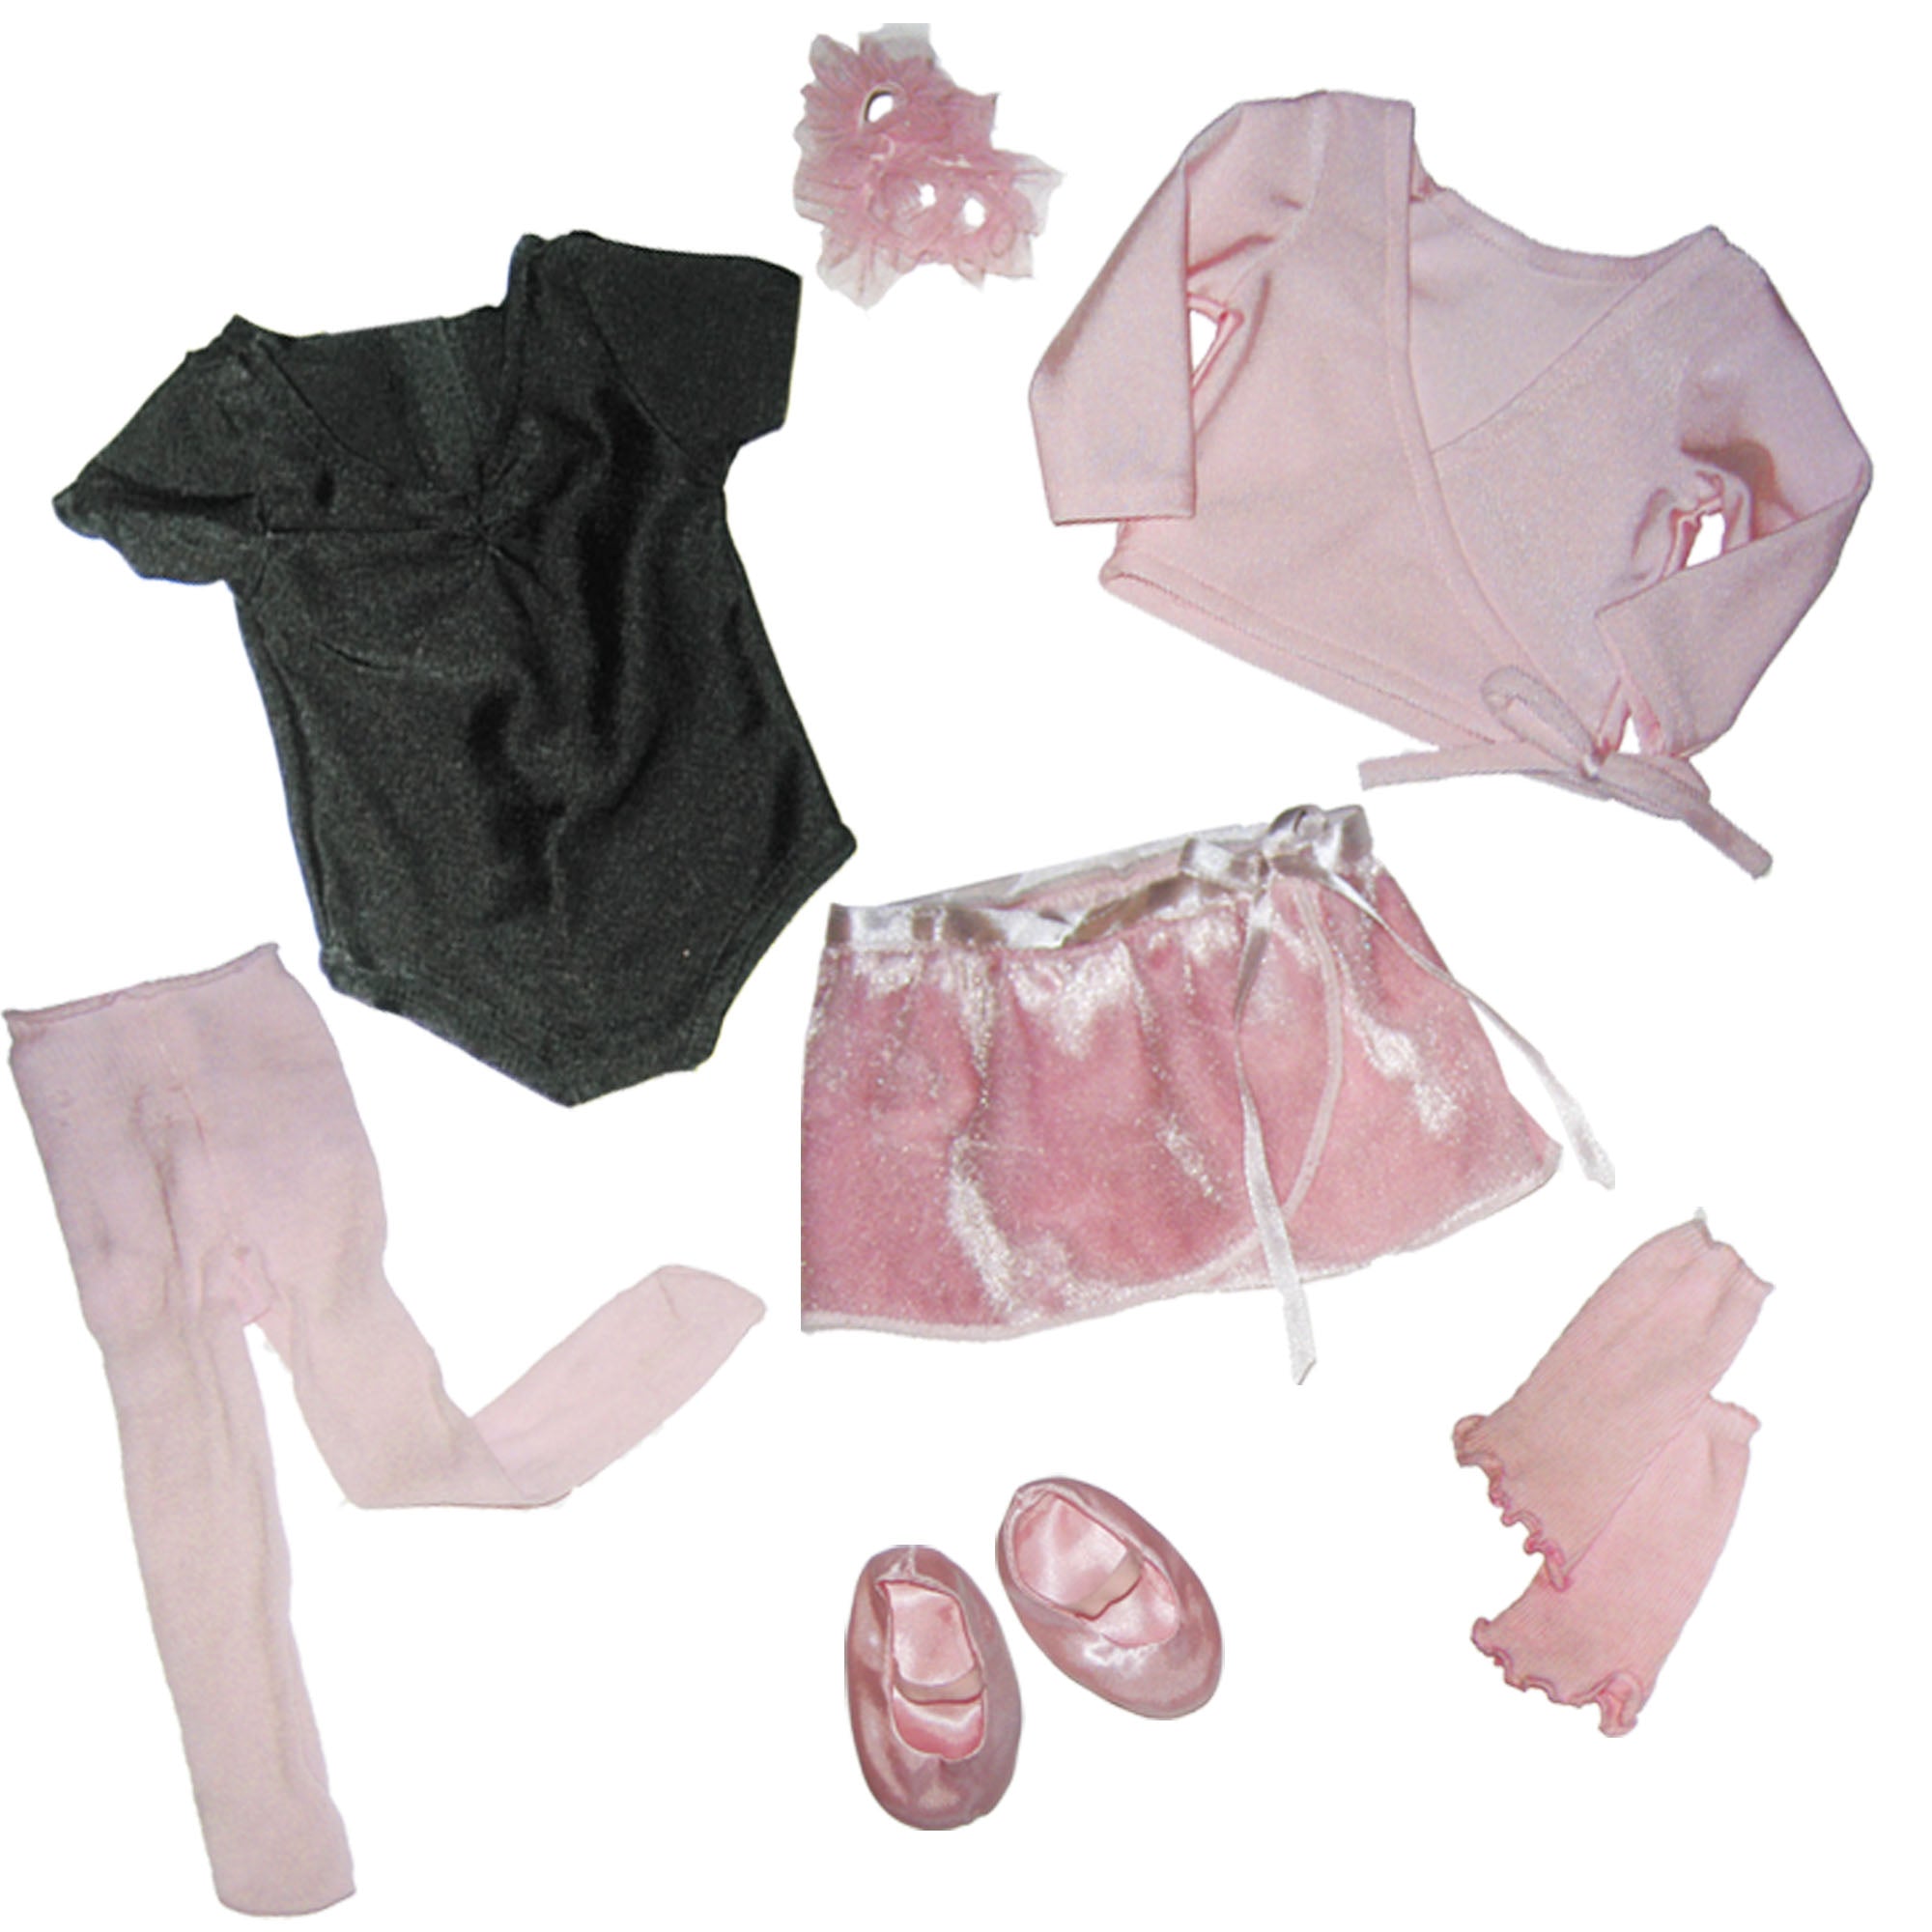 Sophia's Complete Ballet Leotard and Sweater Set for 18" Dolls, Light Pink